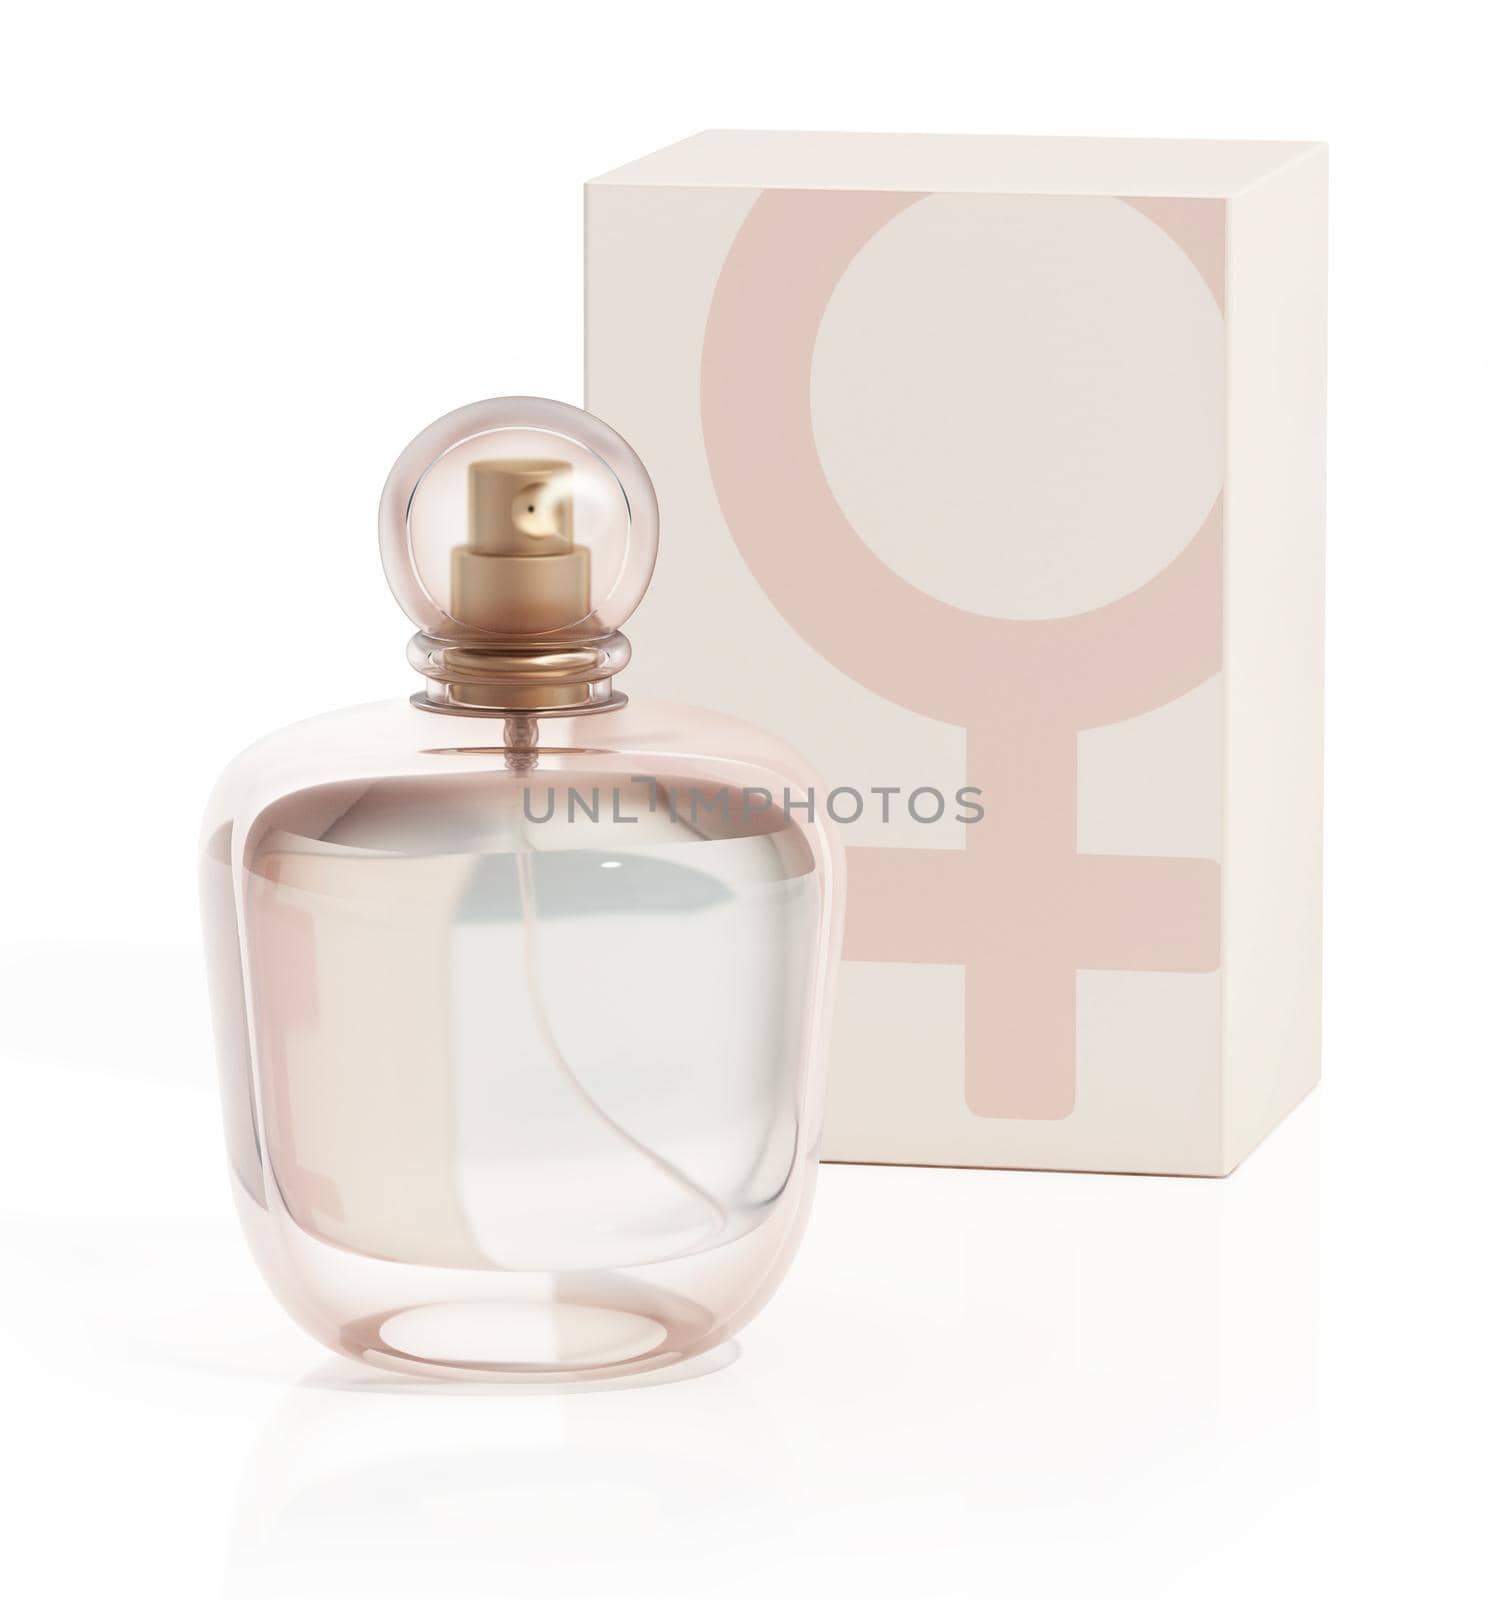 Perfume bottle isolated on white background. 3D illustration.